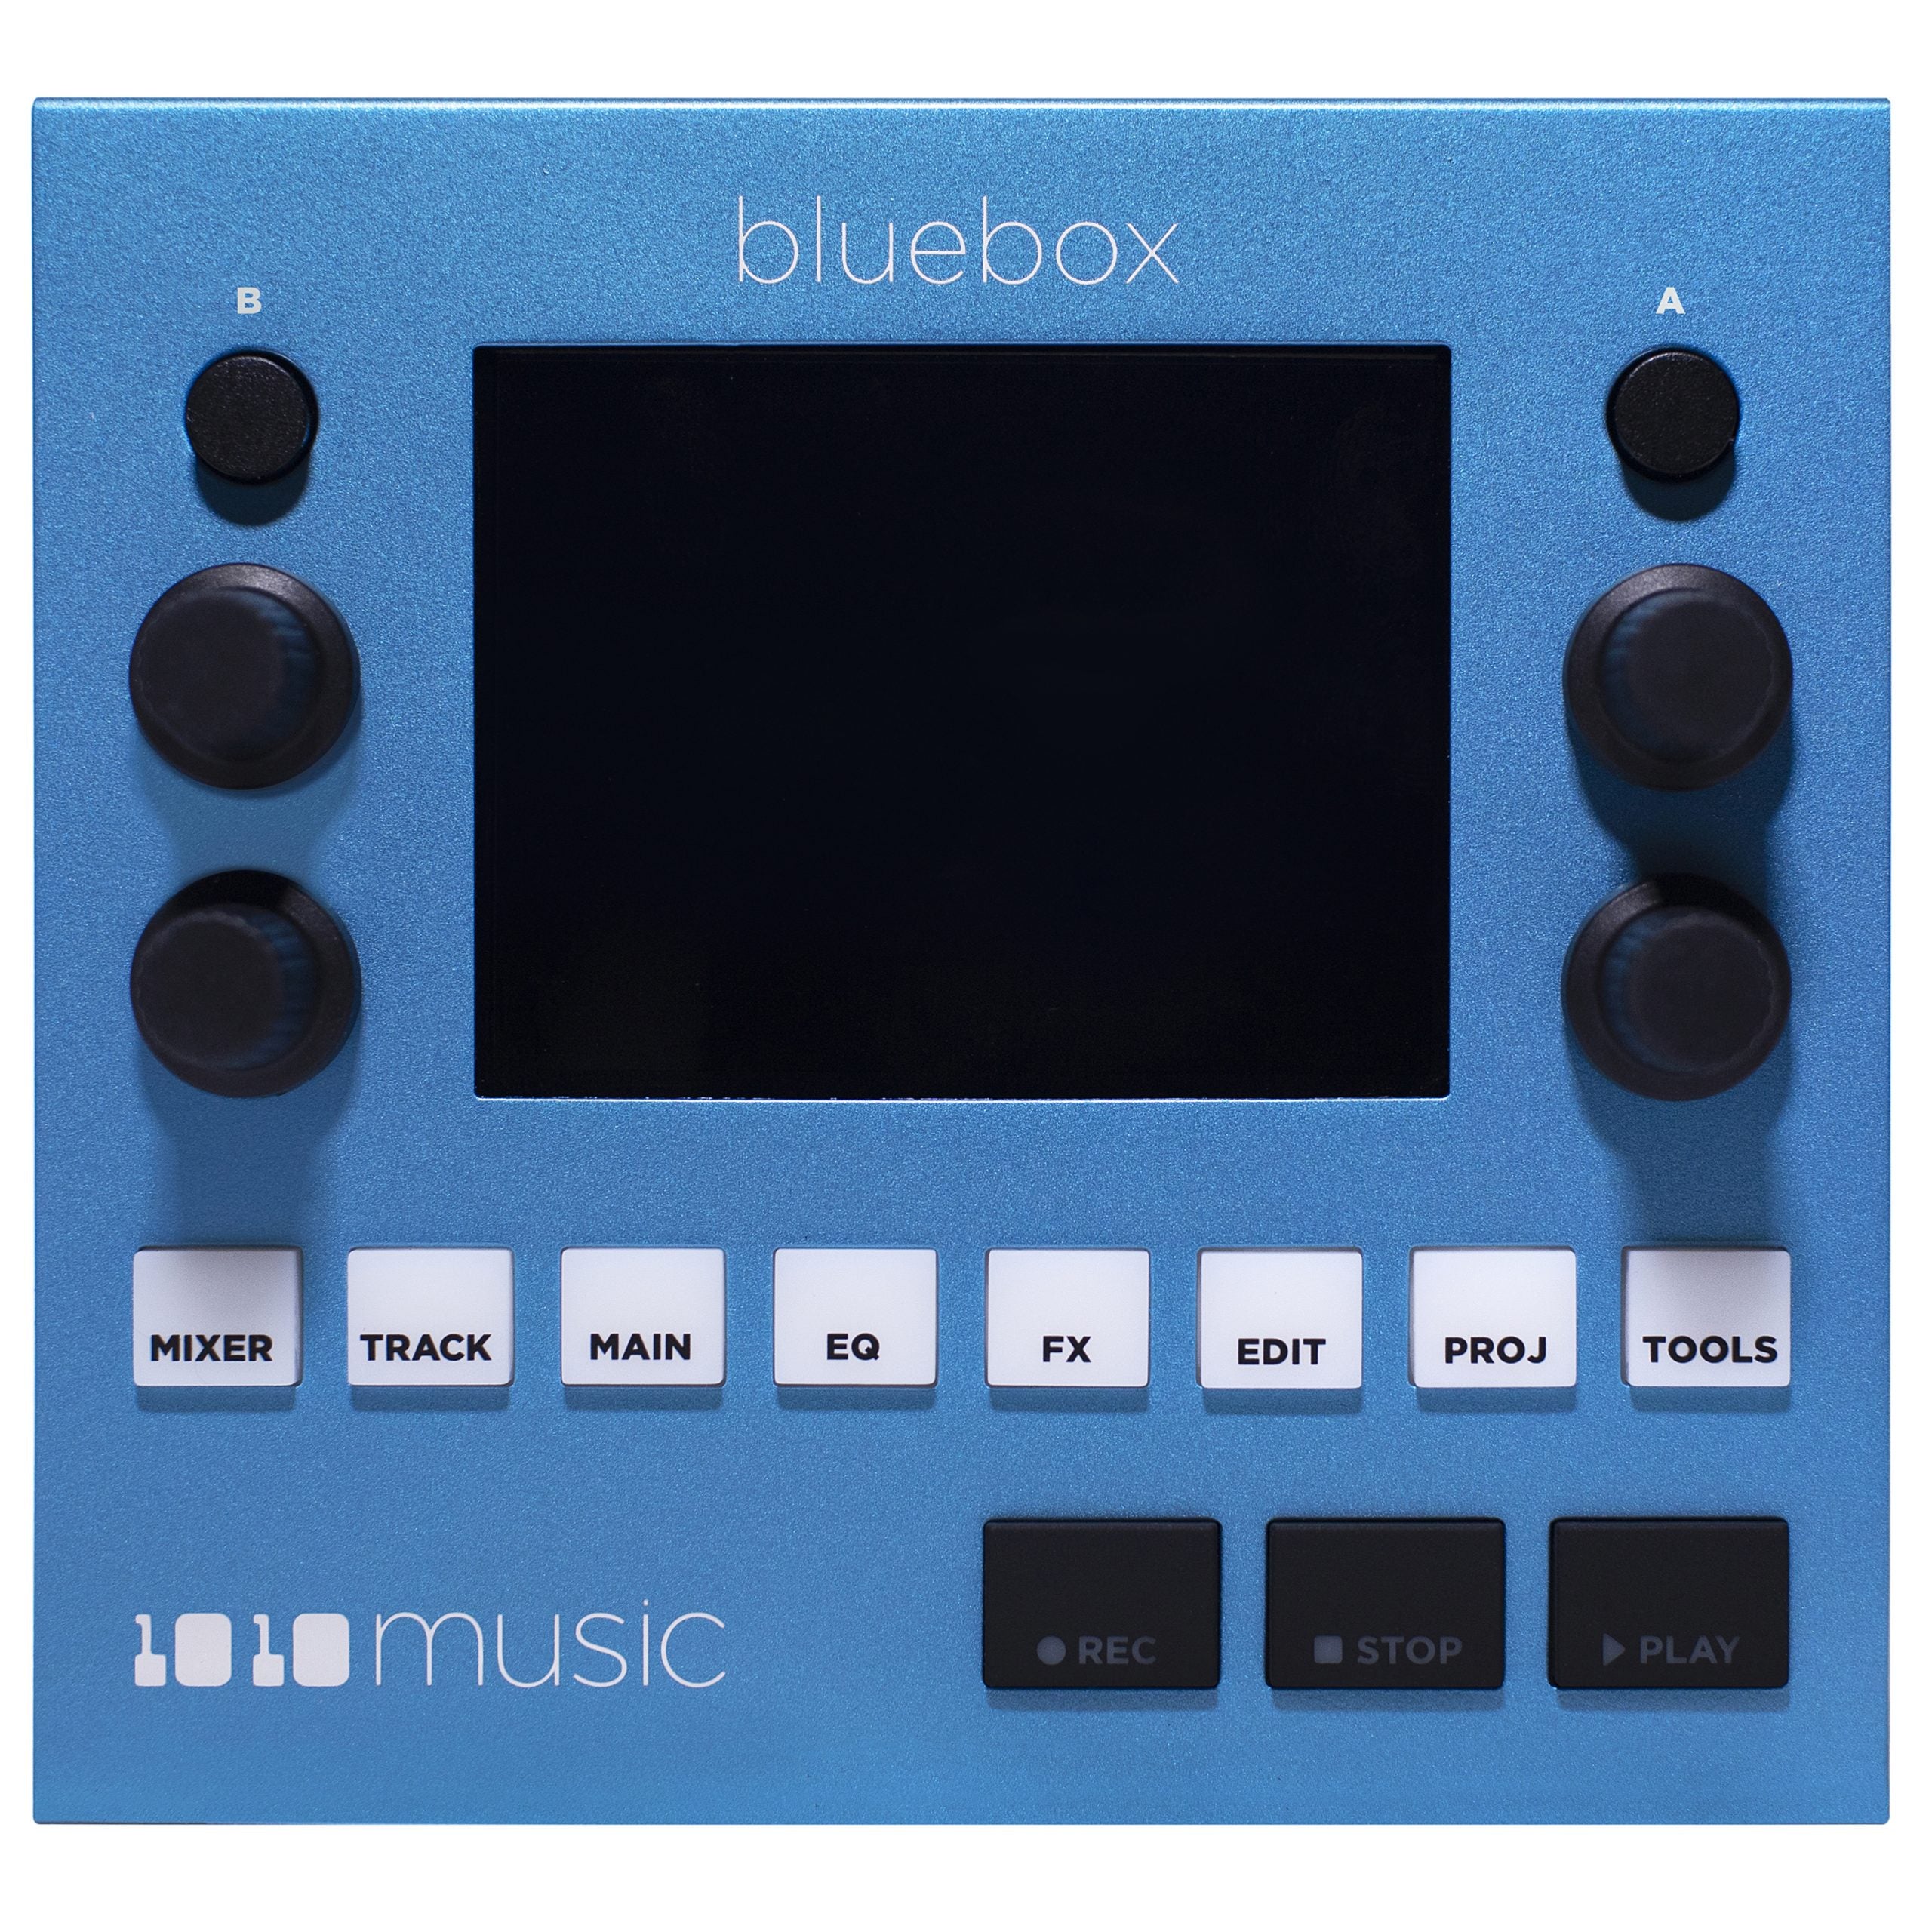 1010music bluebox